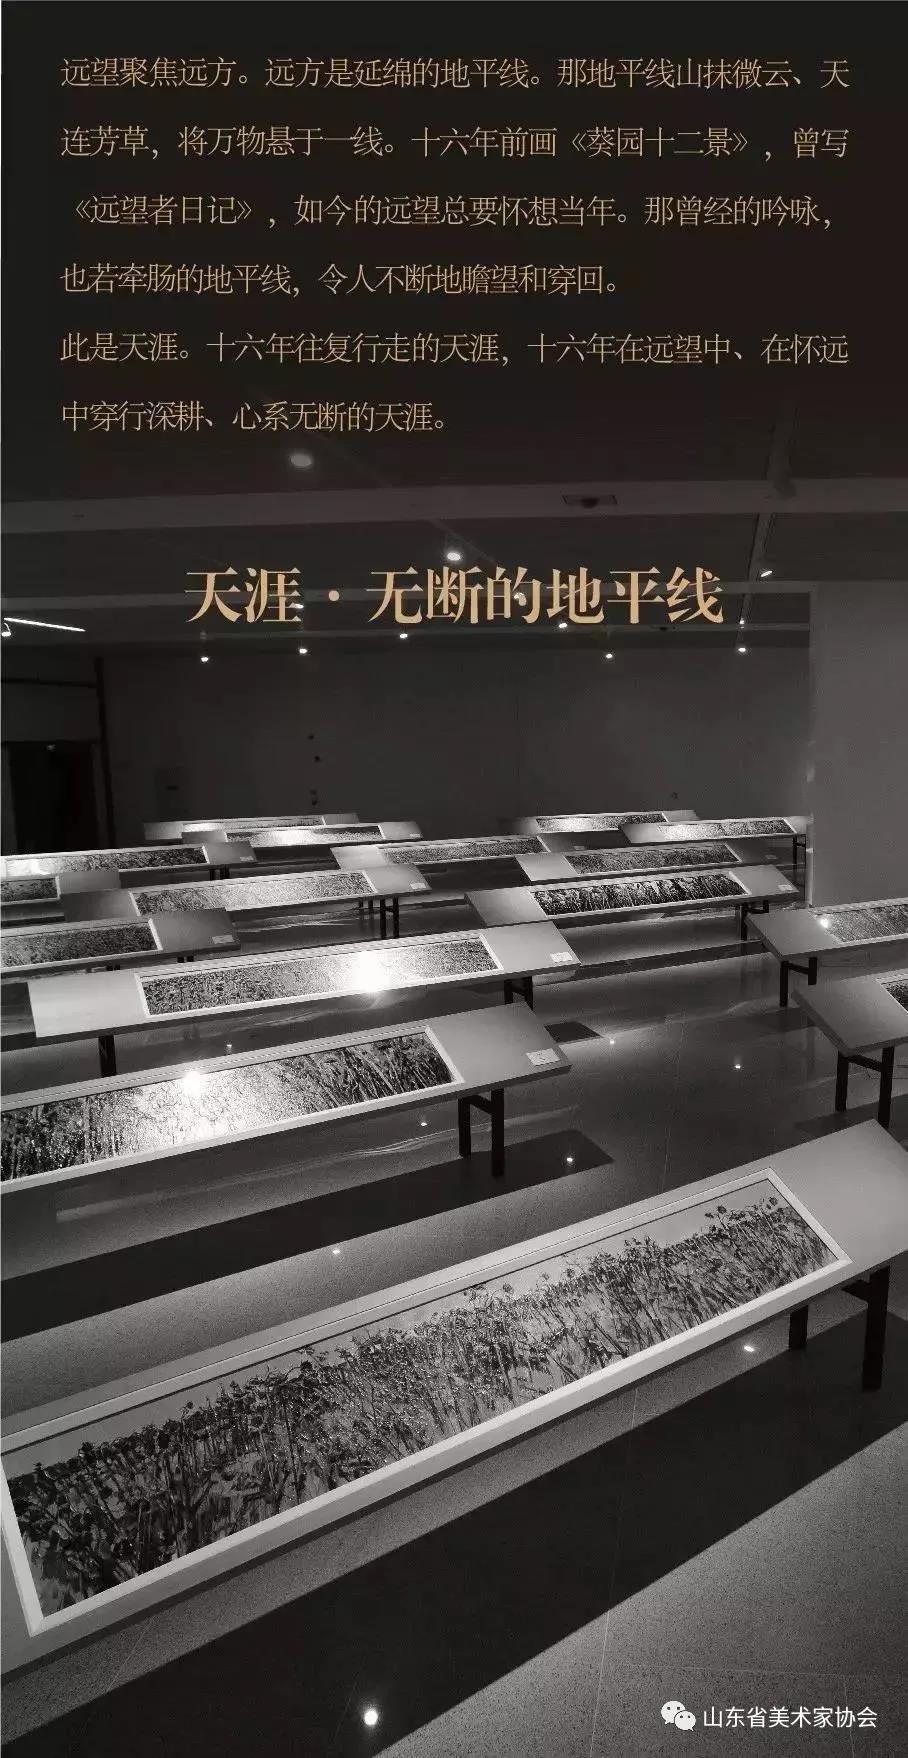 中国美术学院院长许江“葵颂——许江艺术展”12月21日在山东美术馆开幕